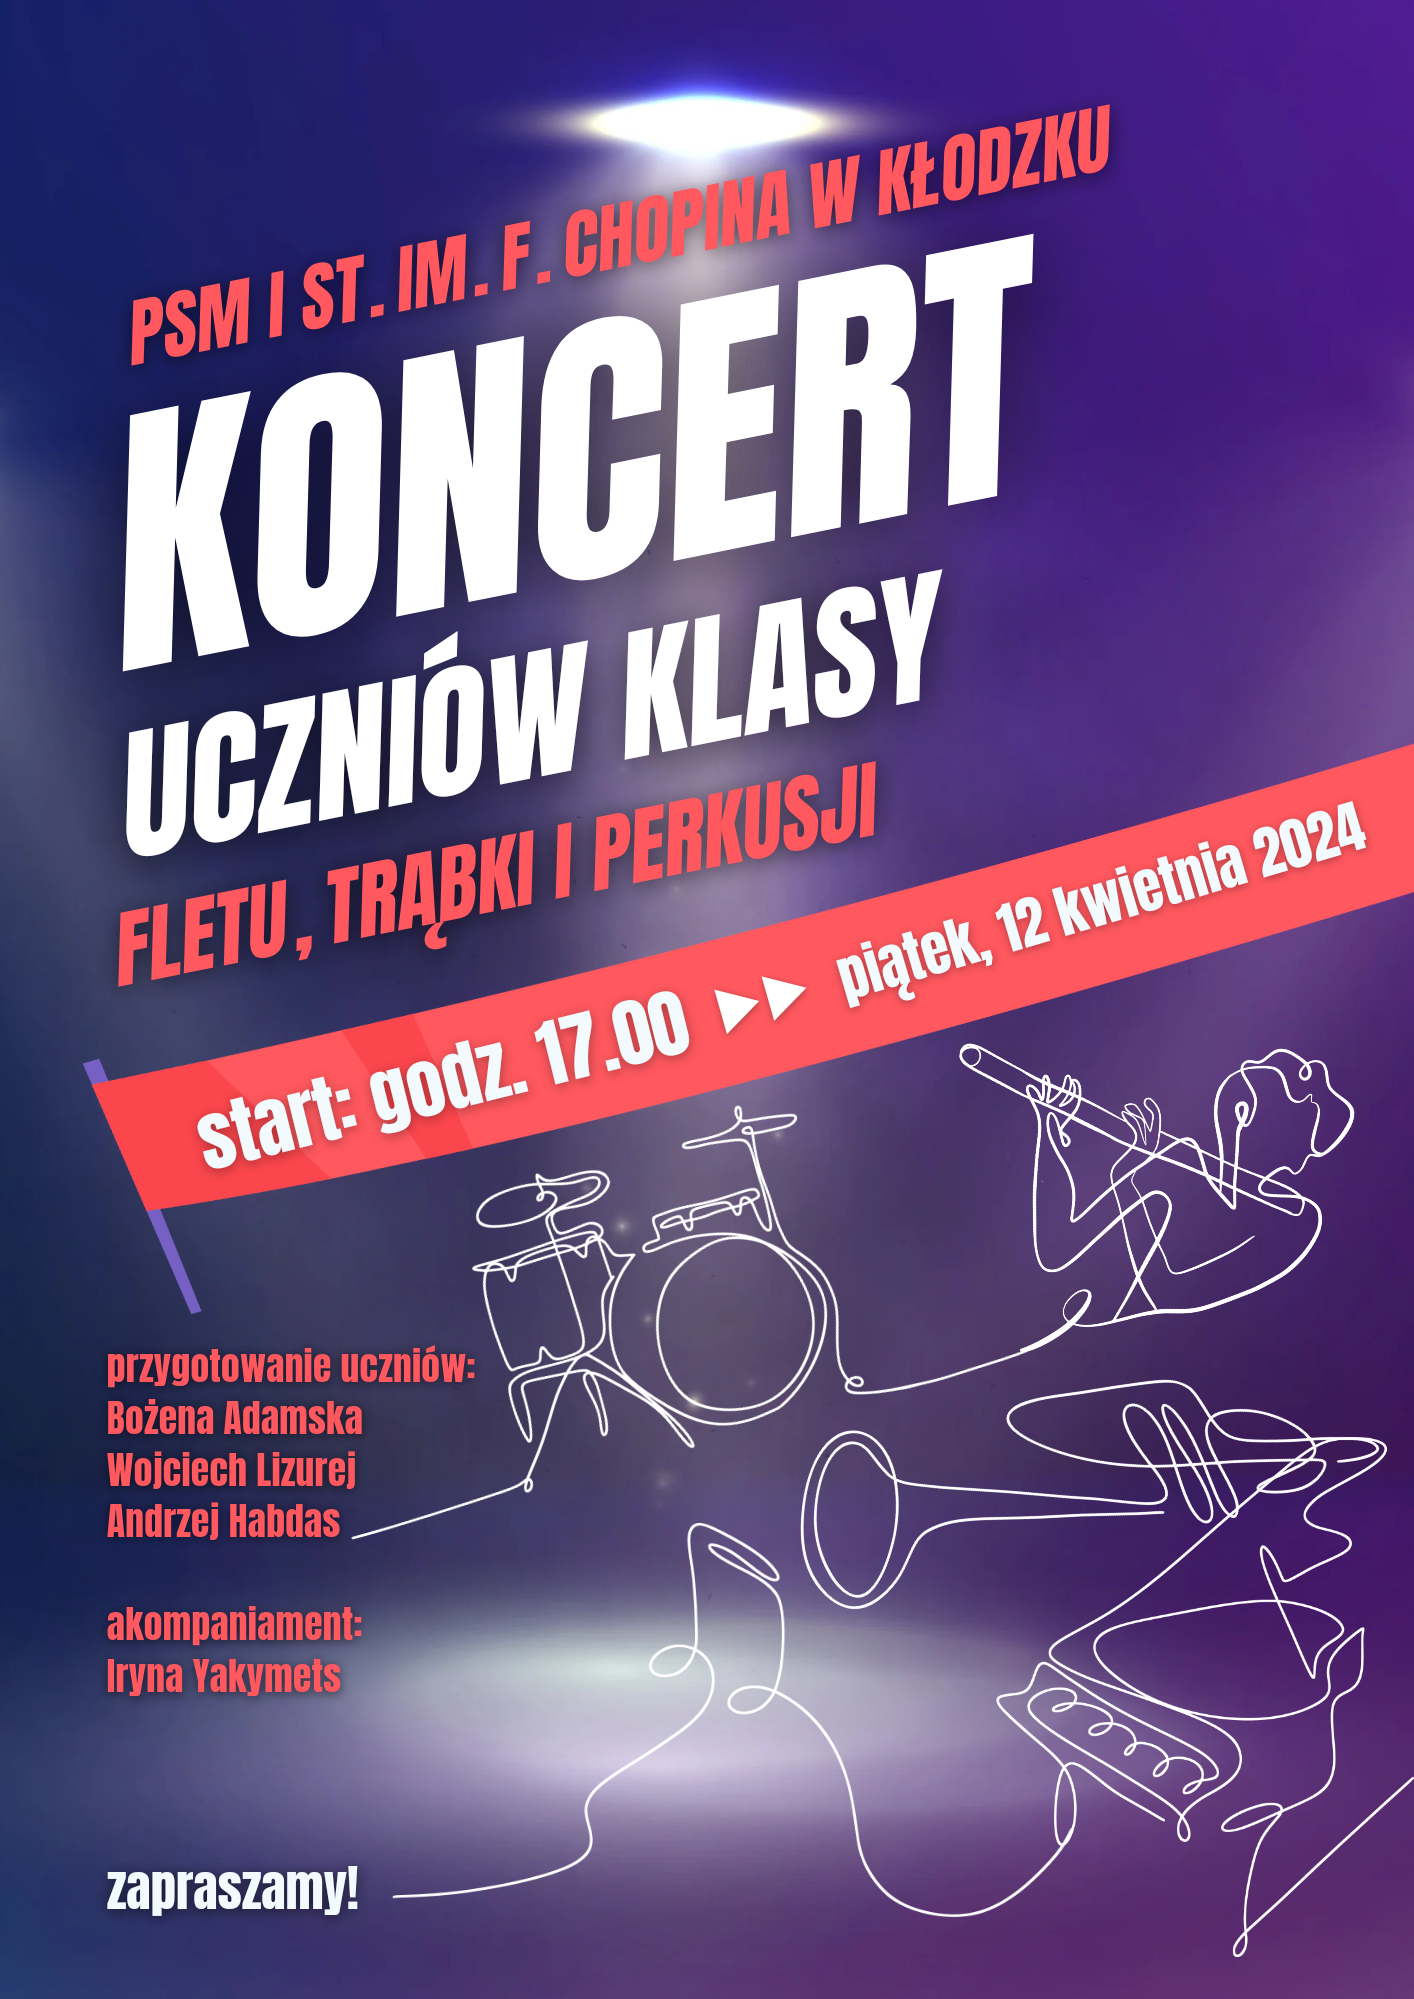 Plakat na fioletowym tle z informacją tekstowa dotyczącą koncertu uczniów klasy fletu, trąbki i perkusji, który odbędzie się 12 kwietnia 2024 w auli PSM w Kłodzku